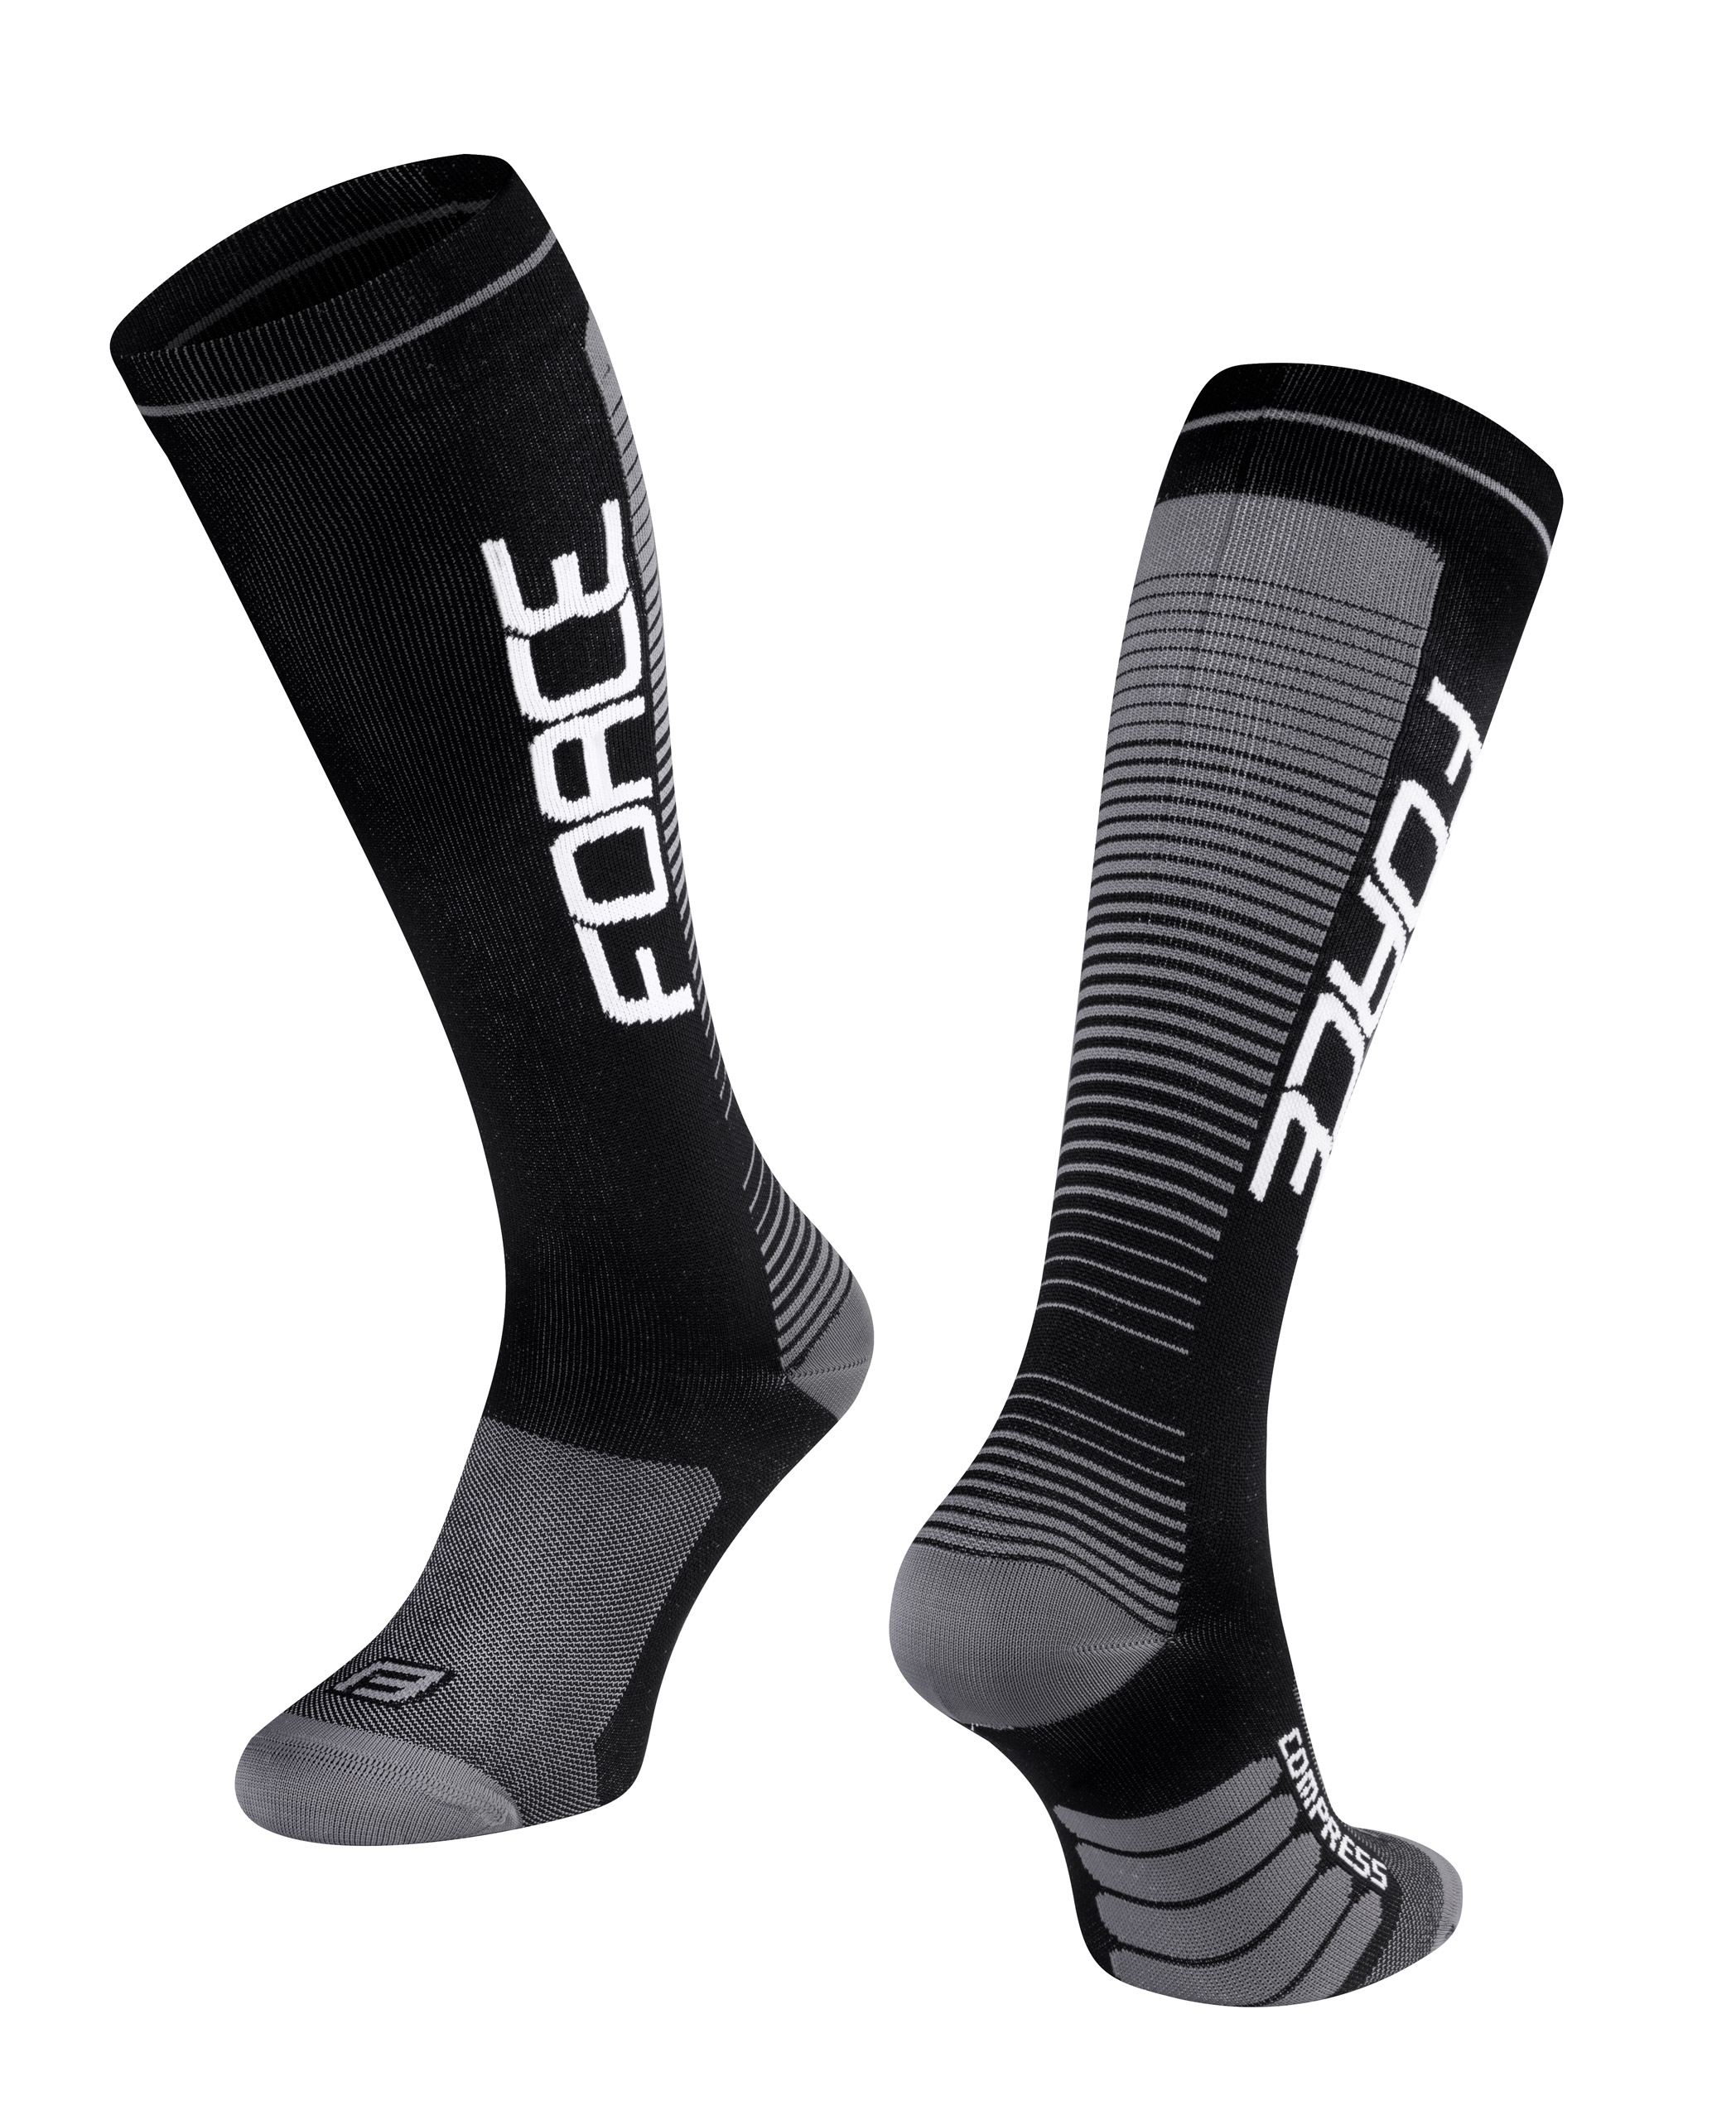 FORCE ponožky F COMPRESS, černo-šedé S-M/36-41 Velikost: XXS-XS